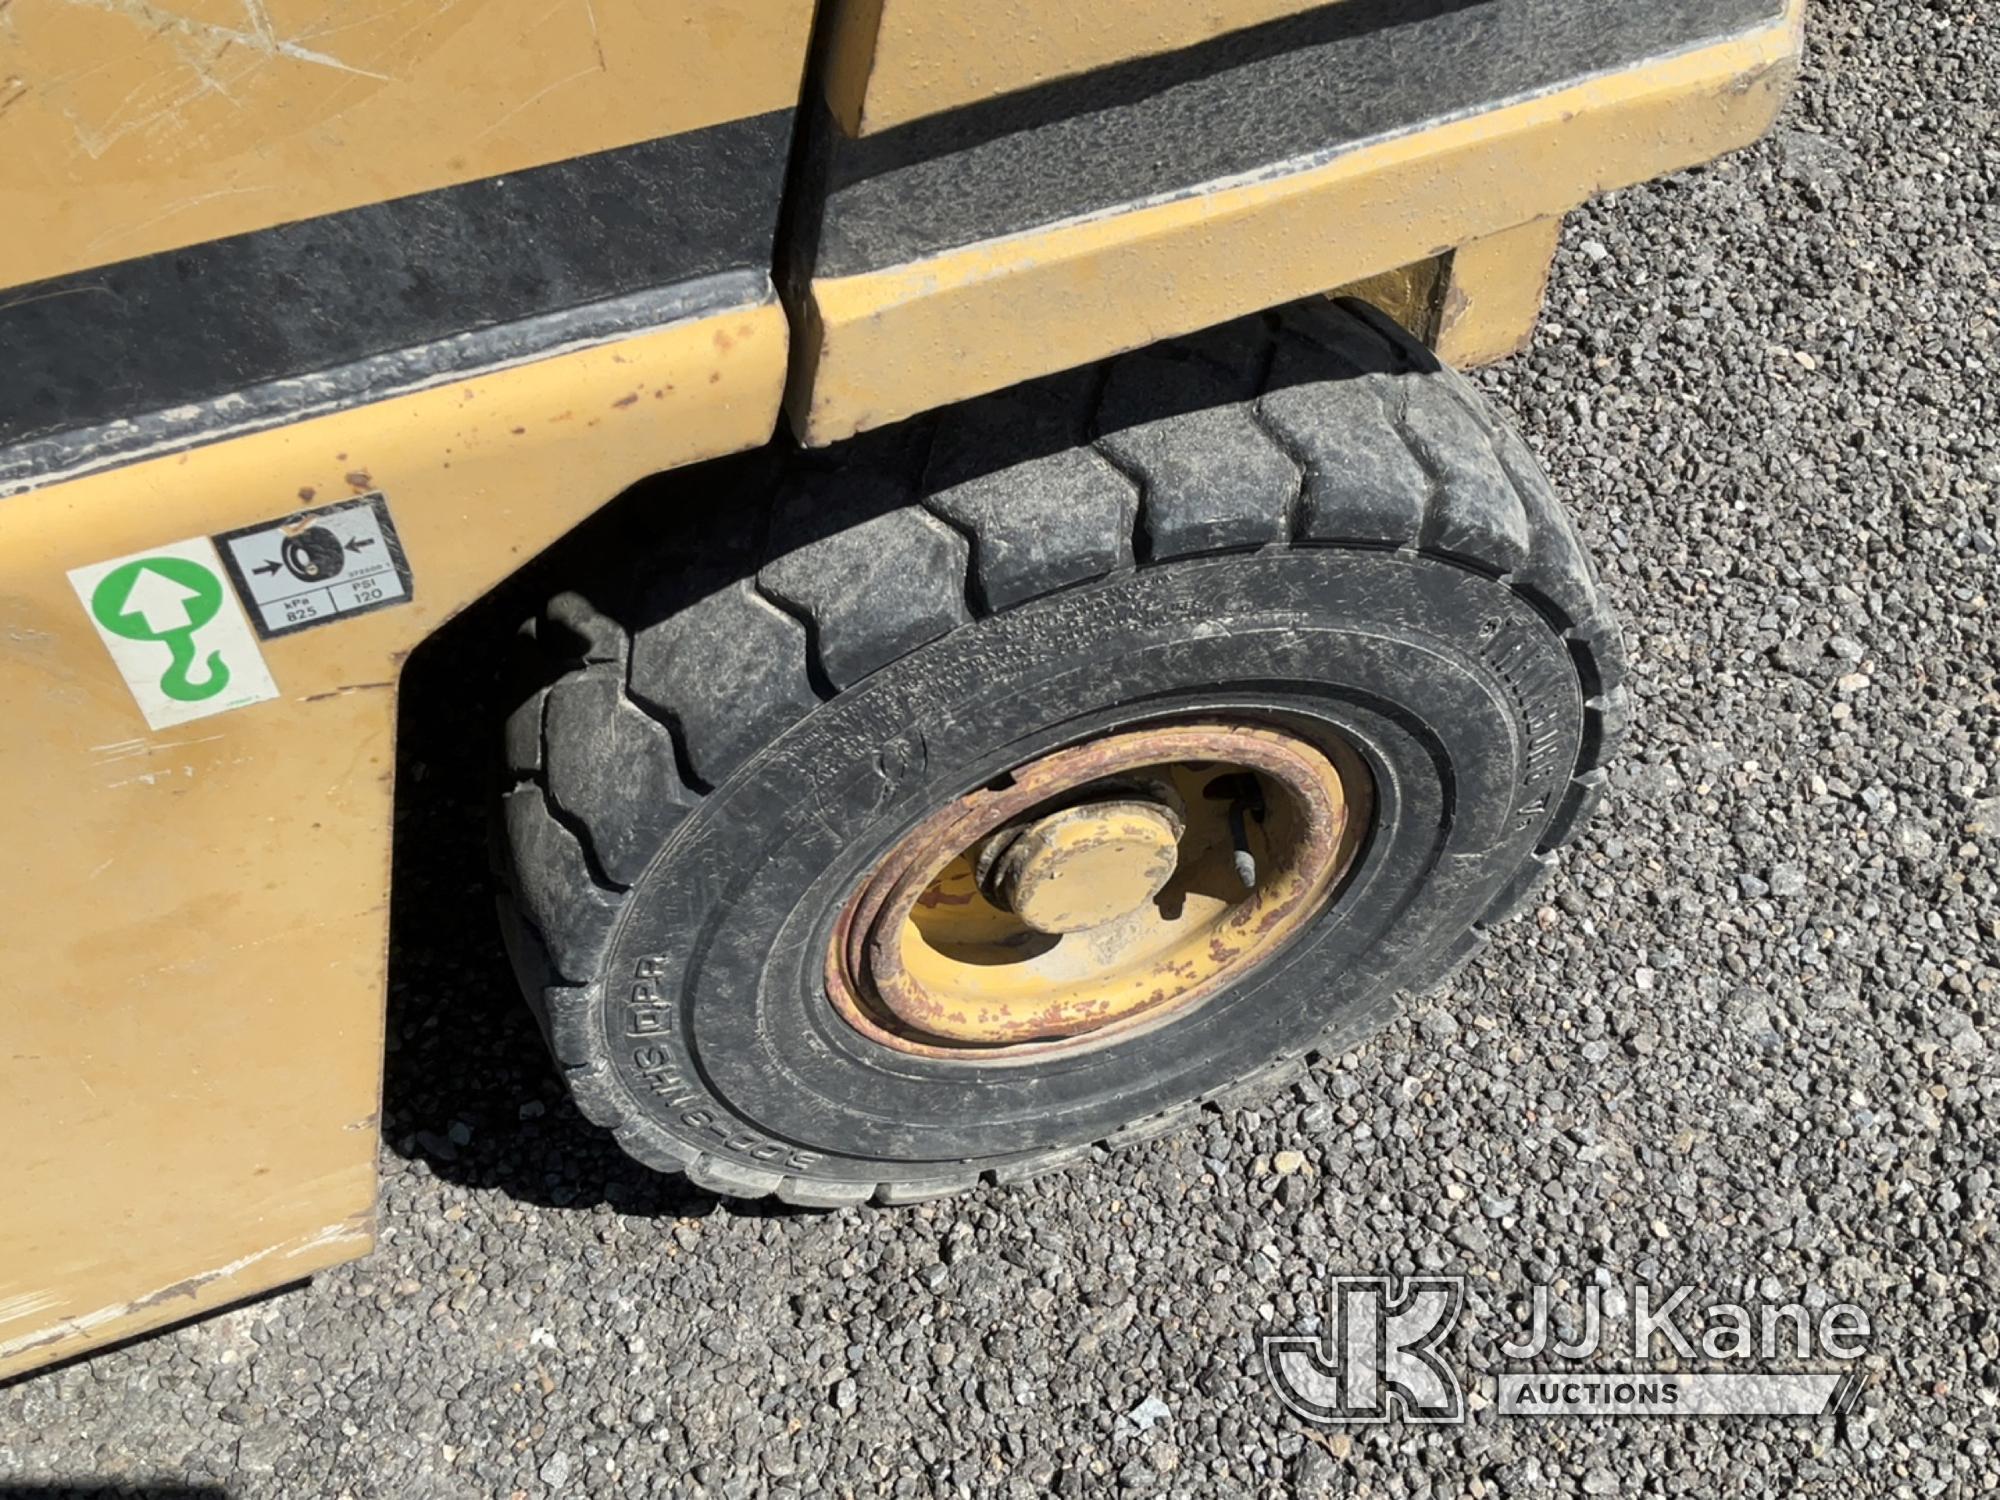 (Salt Lake City, UT) Caterpillar VC60D Forklift Cranks, Will Not Start